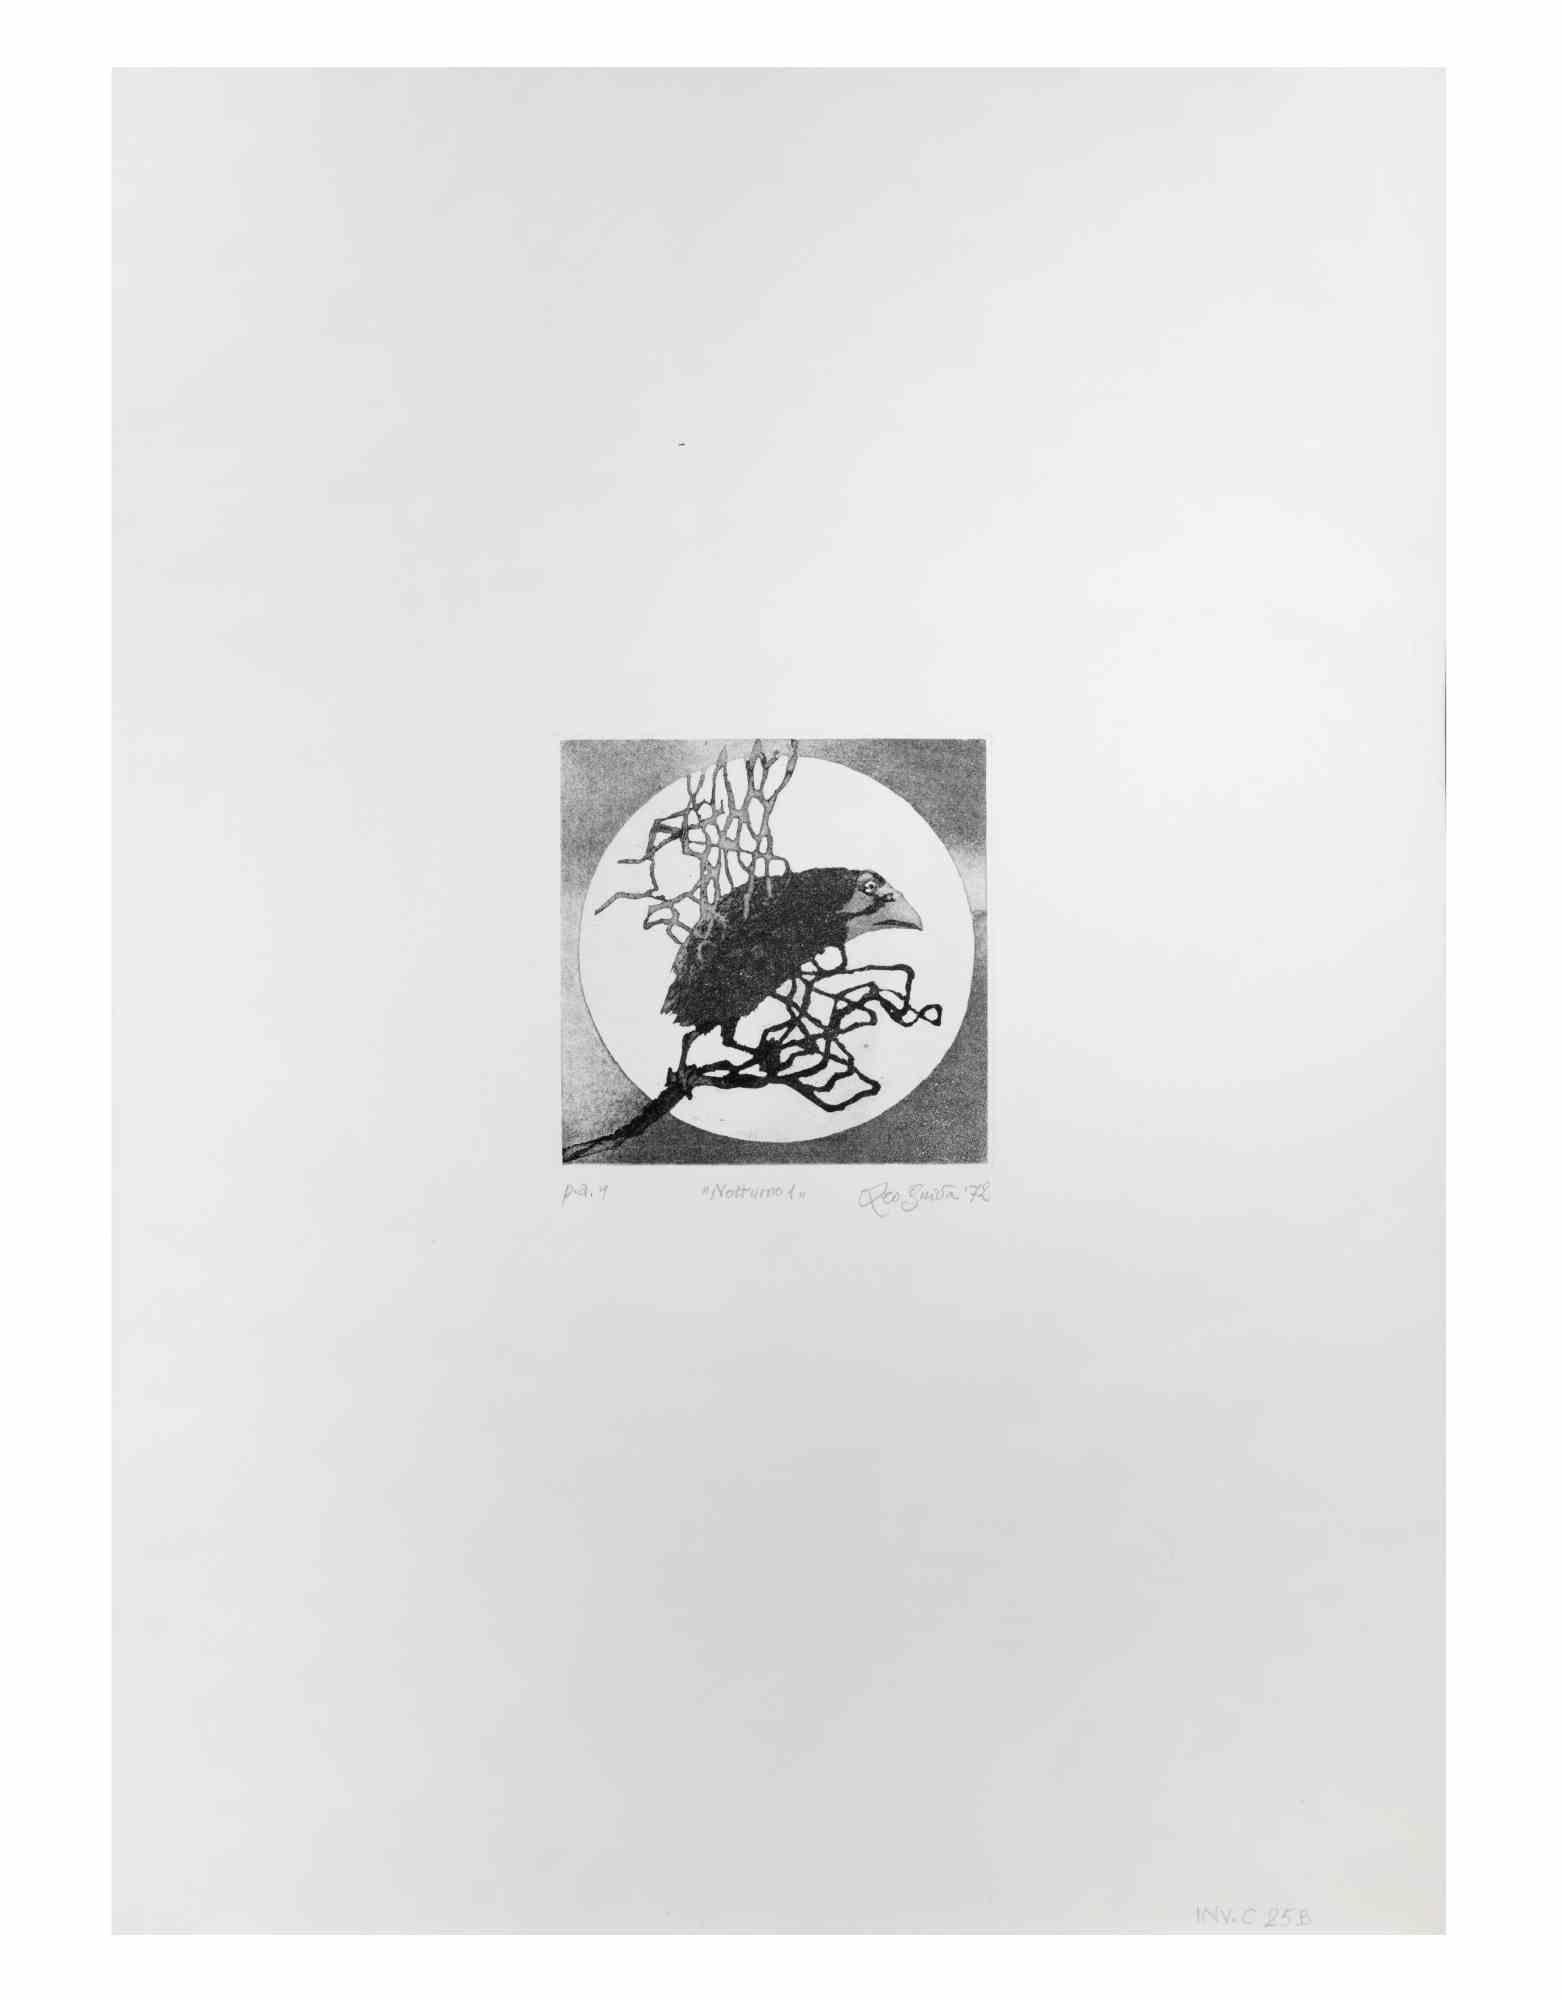 Nocturnal ist ein Kunstwerk, das von dem italienischen Künstler  Leo Guida (1992 - 2017) im Jahr 1972.

Schwarz-Weiß-Radierung auf Papier.

Rechts unten handschriftlich signiert, datiert und betitelt, Probedruck des Künstlers, links unten Abzüge.